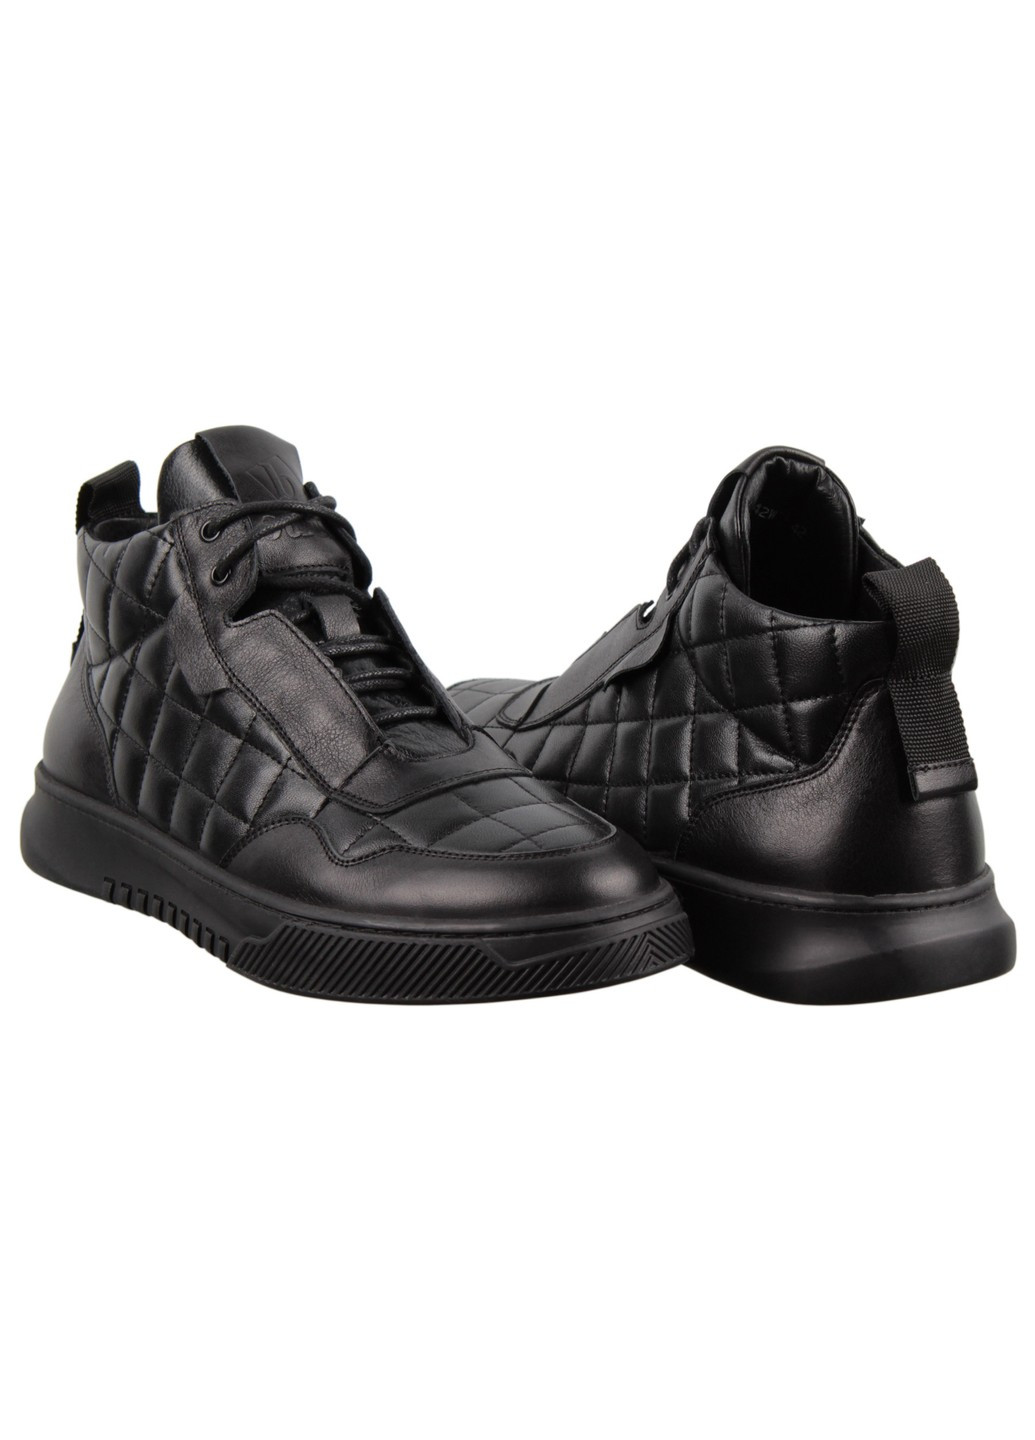 Черные зимние мужские ботинки 198809 Buts